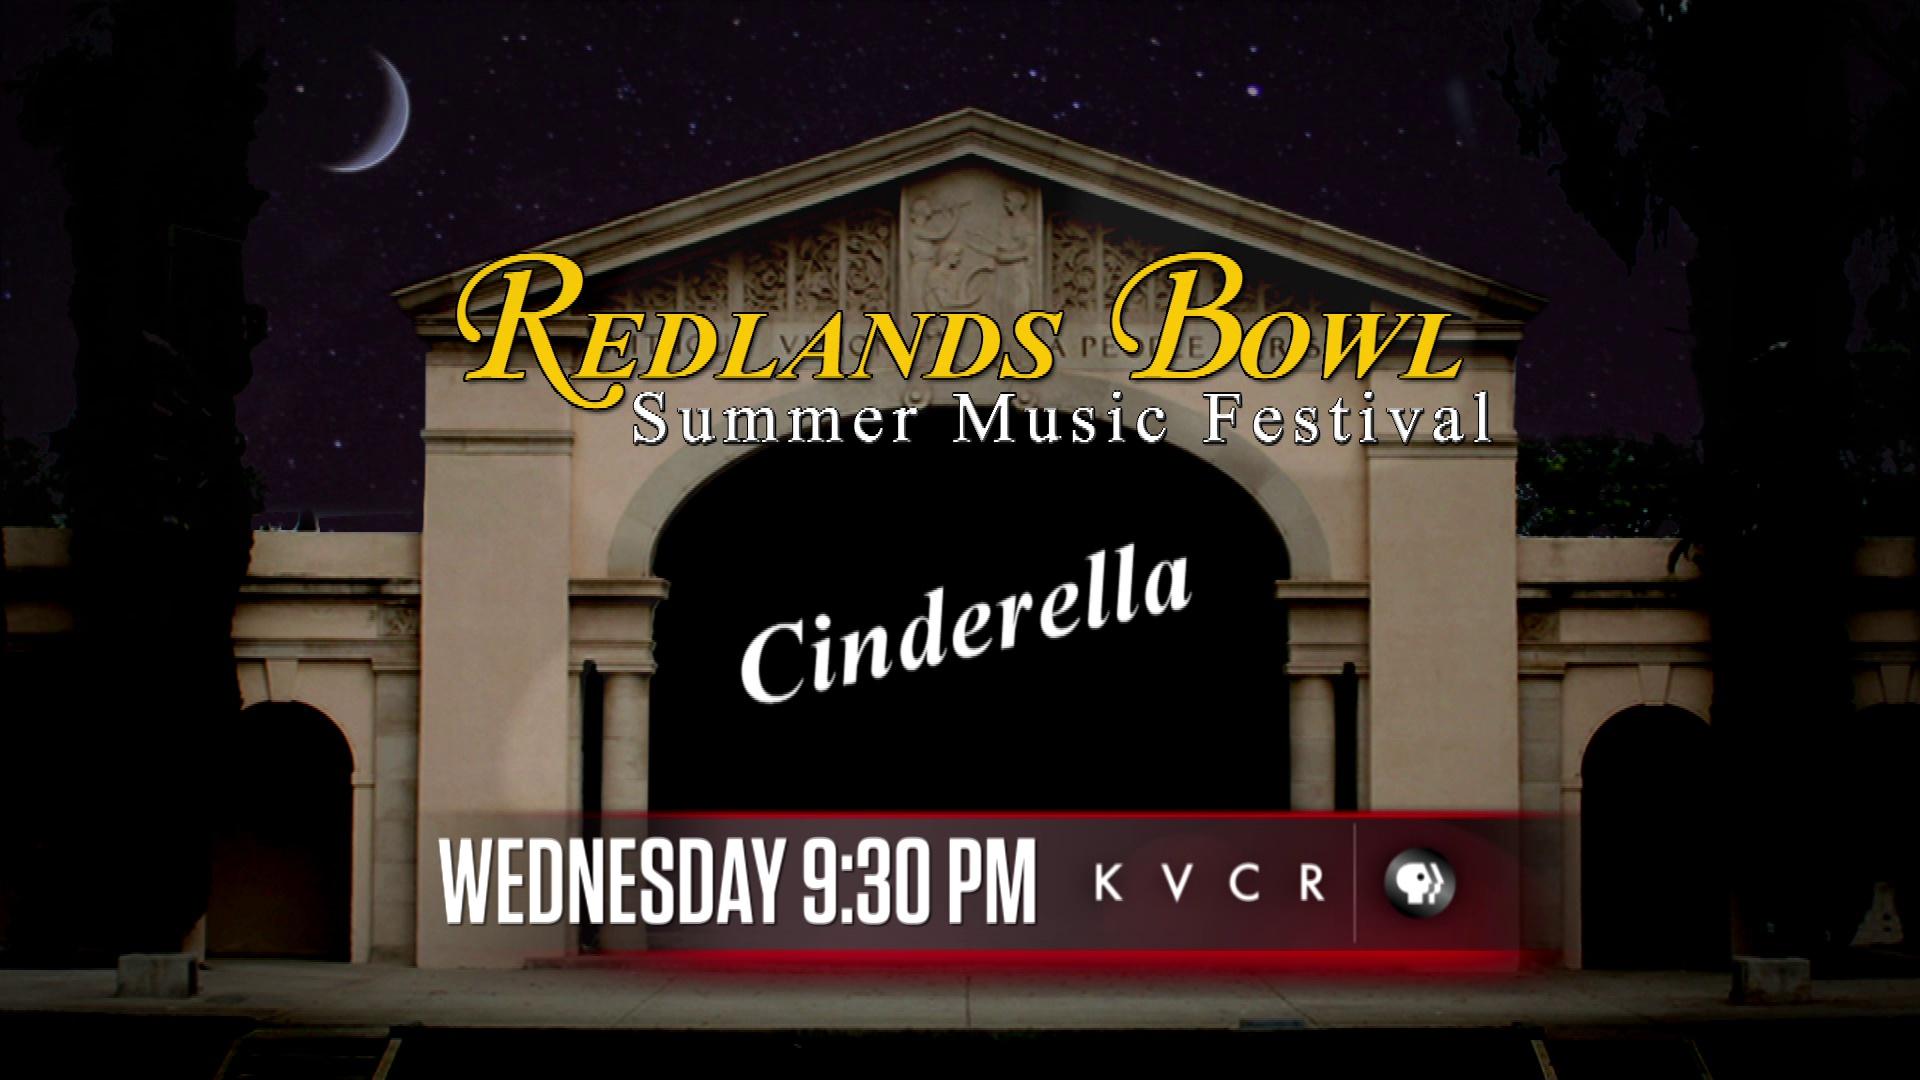 Redlands Bowl Cinderella Preview Redlands Bowl Summer Music Festival